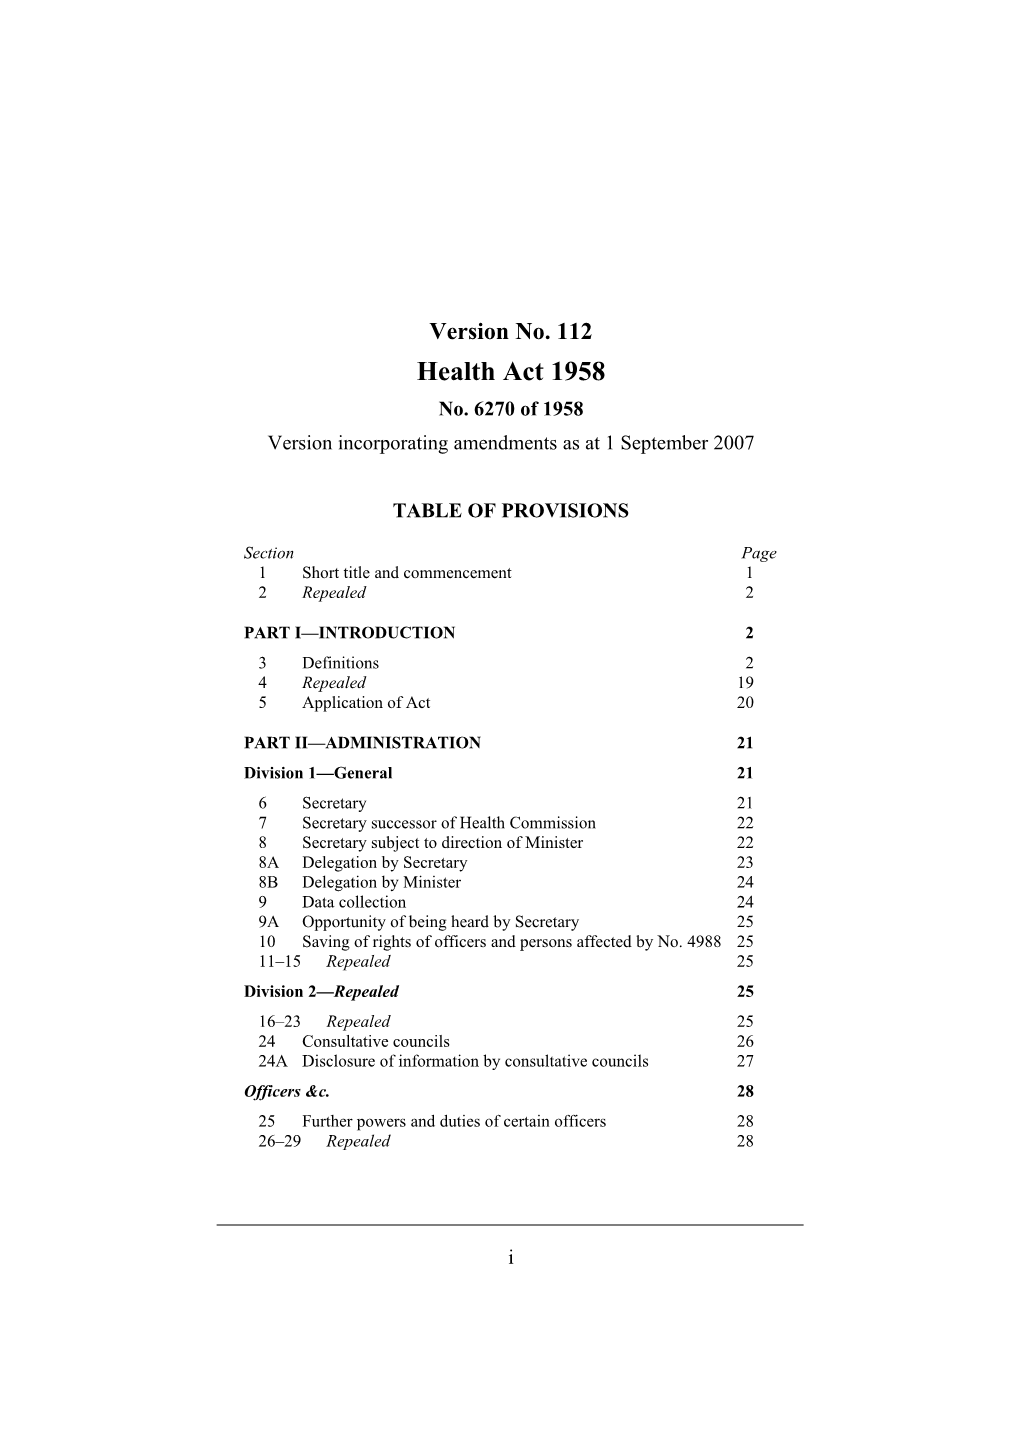 Version Incorporating Amendments As at 1 September 2007